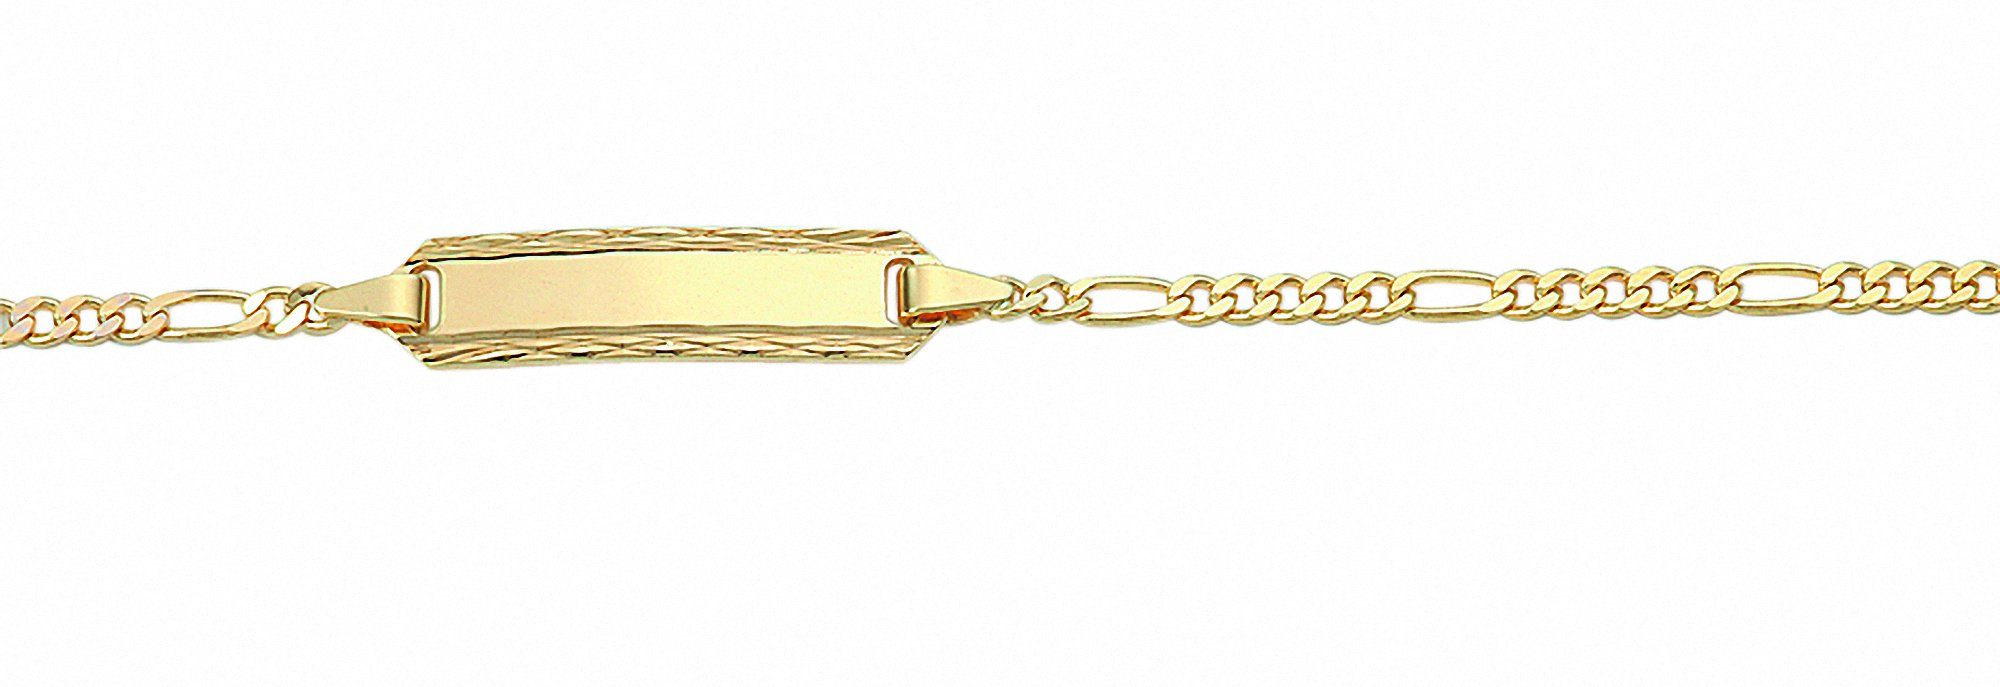 Adelia´s Goldarmband Damen Goldschmuck 585 Gold Figaro Armband 14 cm, 585  Gold Figarokette Goldschmuck für Damen, Im Stil einer Figarokette mit  Federring Verschluß